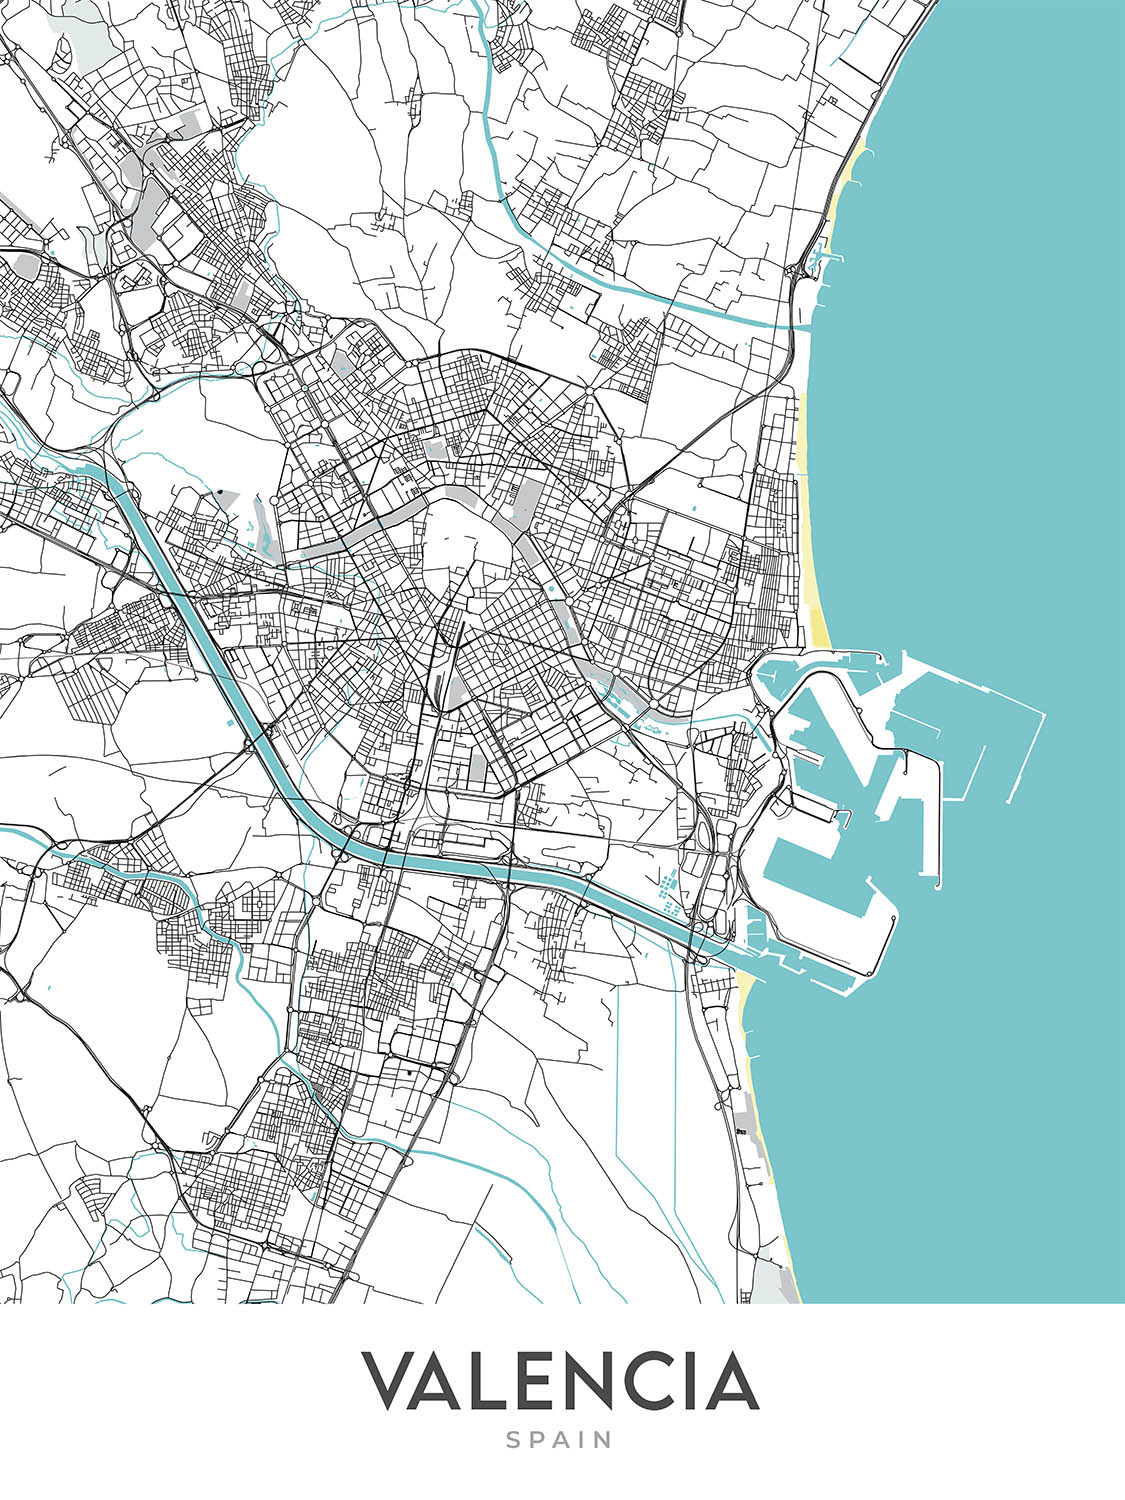 Mapa moderno de la ciudad de Valencia, España: Ciutat Vella, El Carmen, Ruzafa, Ciudad de las Artes y las Ciencias, Jardines del Turia